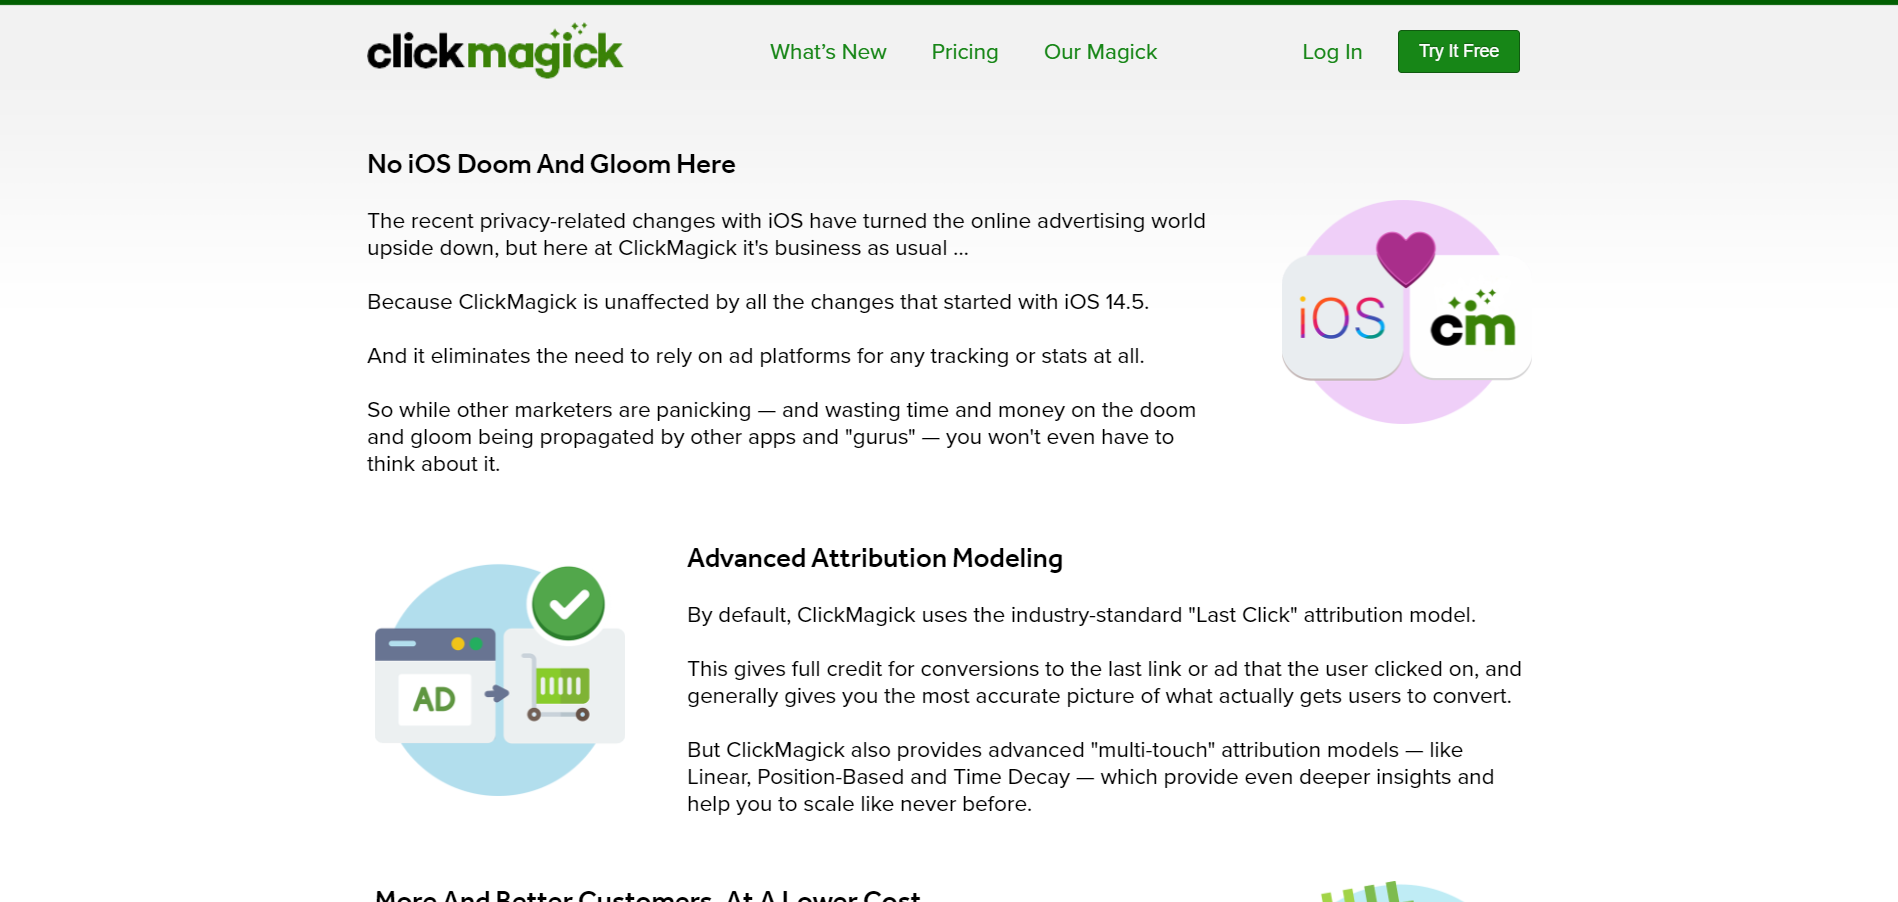 ClickMagick features